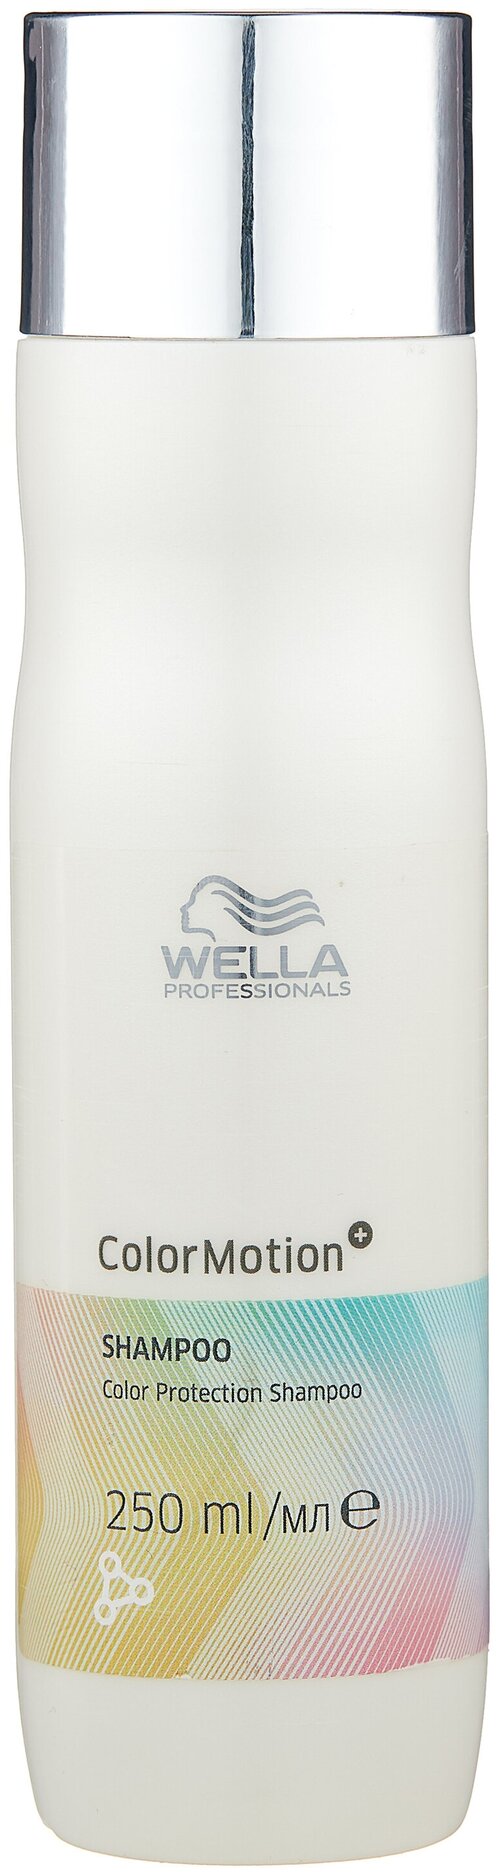 Wella Professionals шампунь Color Motion для защиты цвета, 250 мл